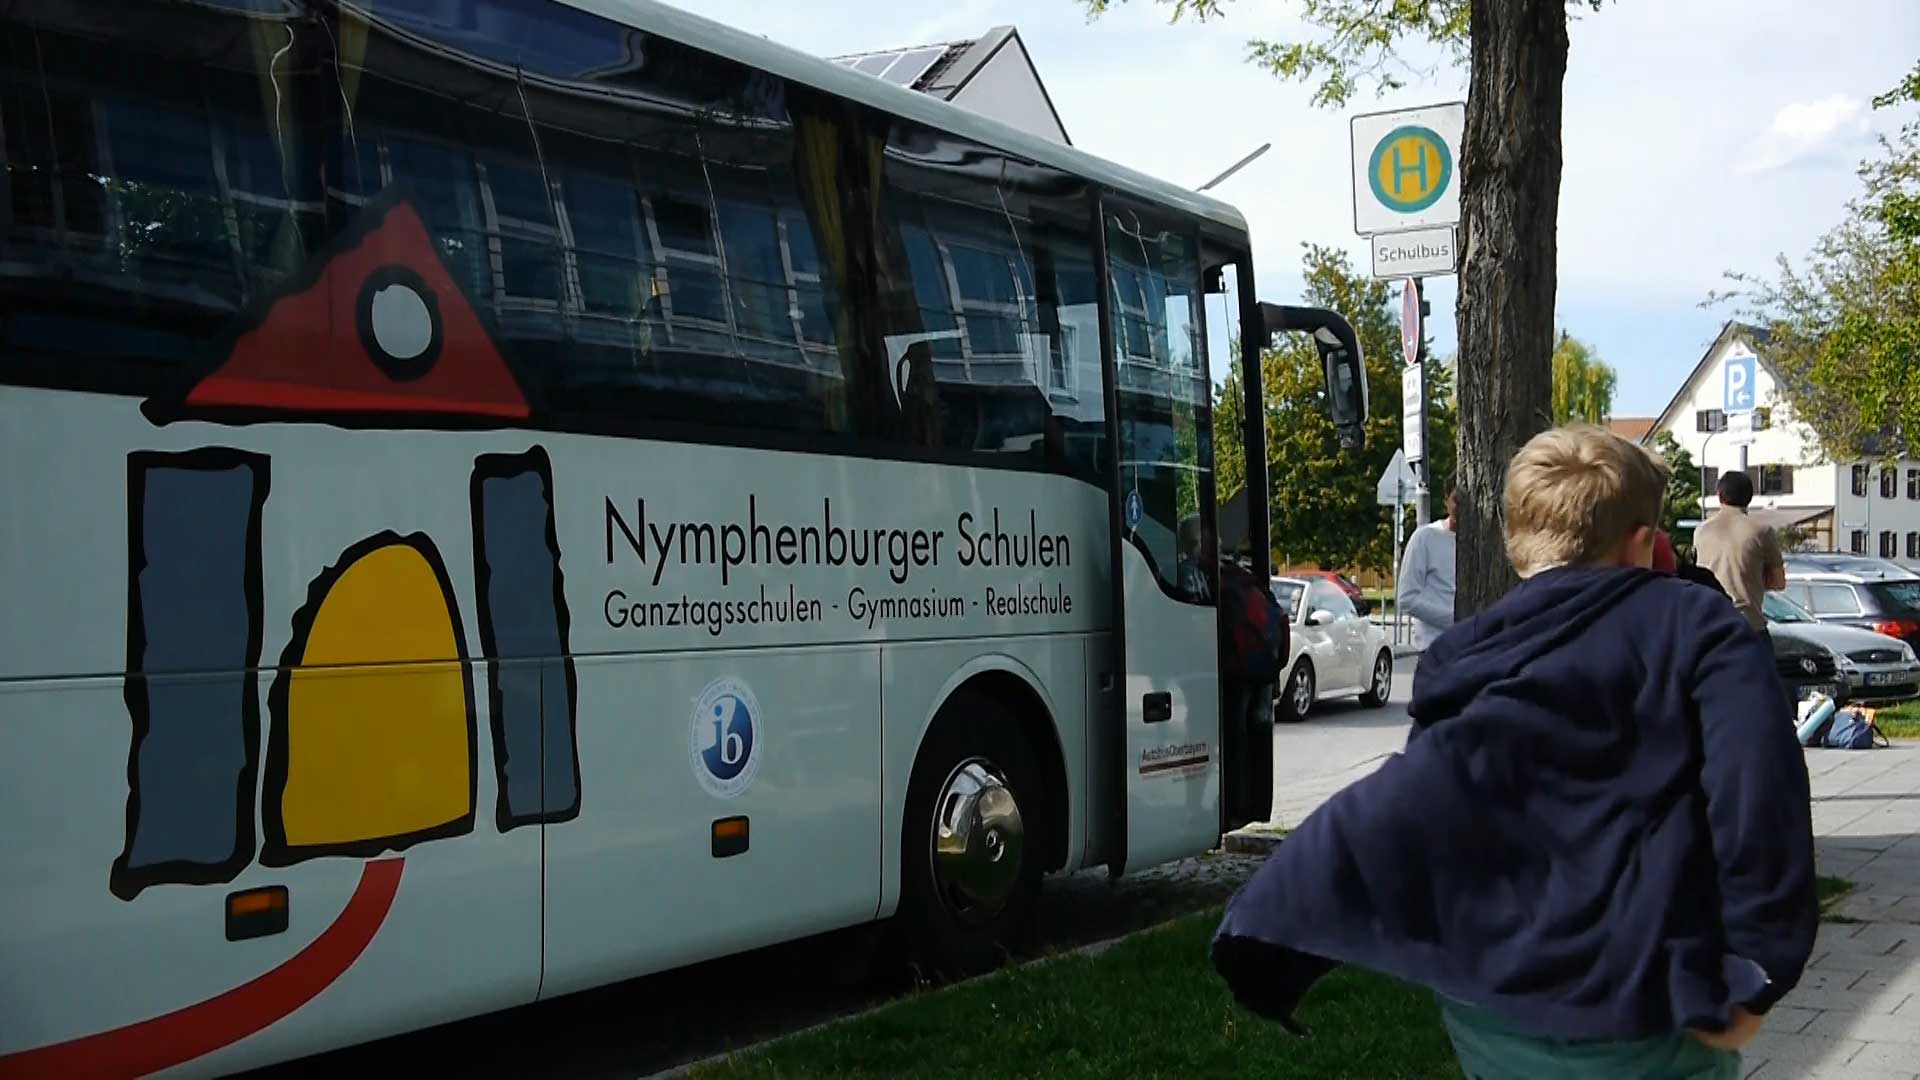 Nymphenburger Schulen München